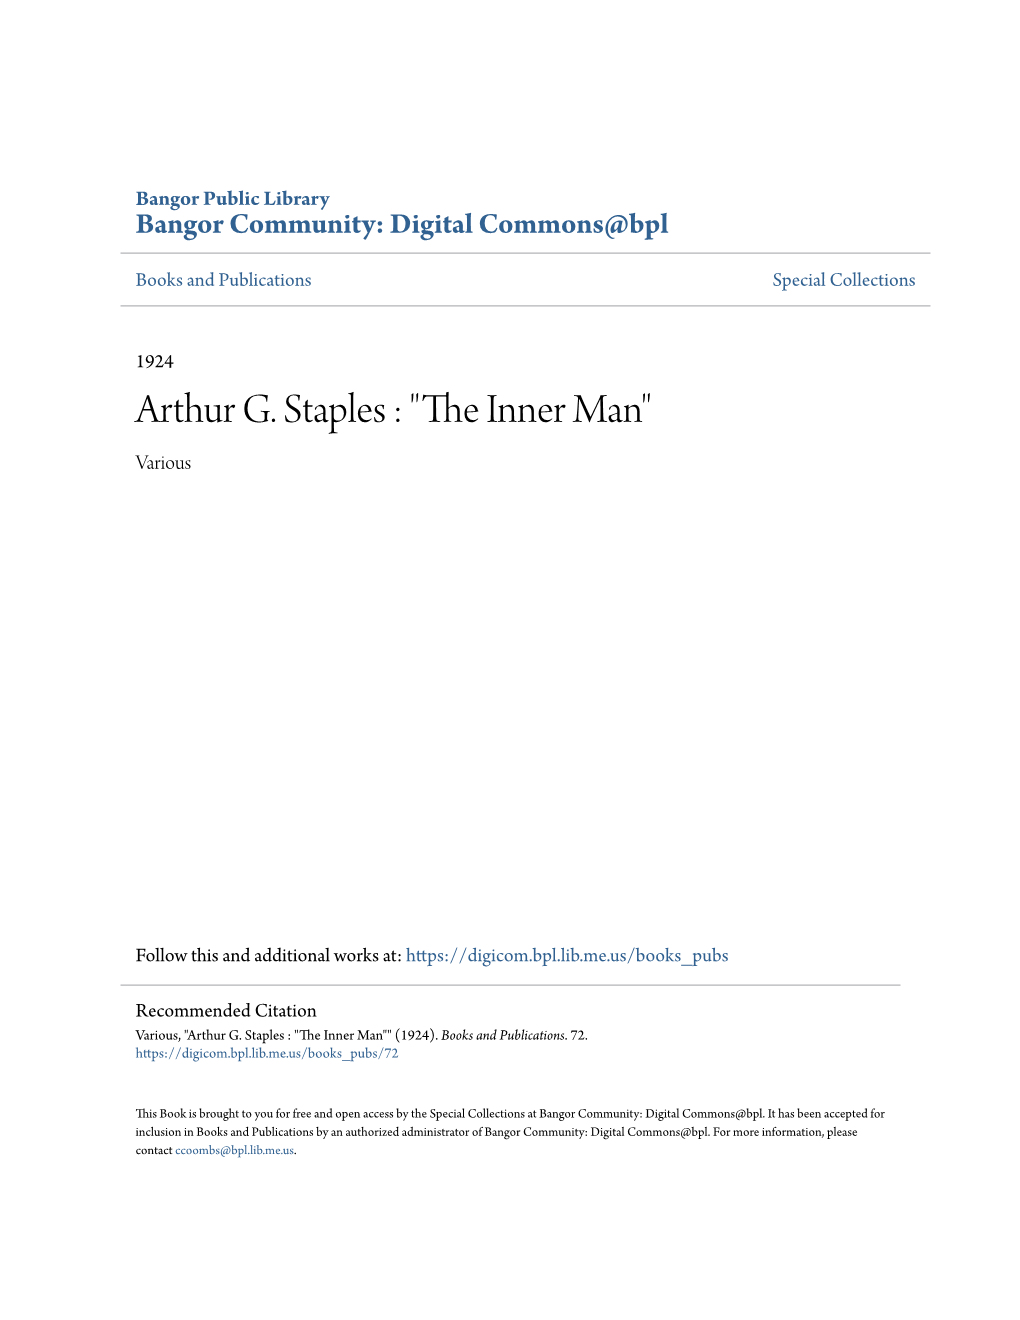 Arthur G. Staples : "The Inner Man"